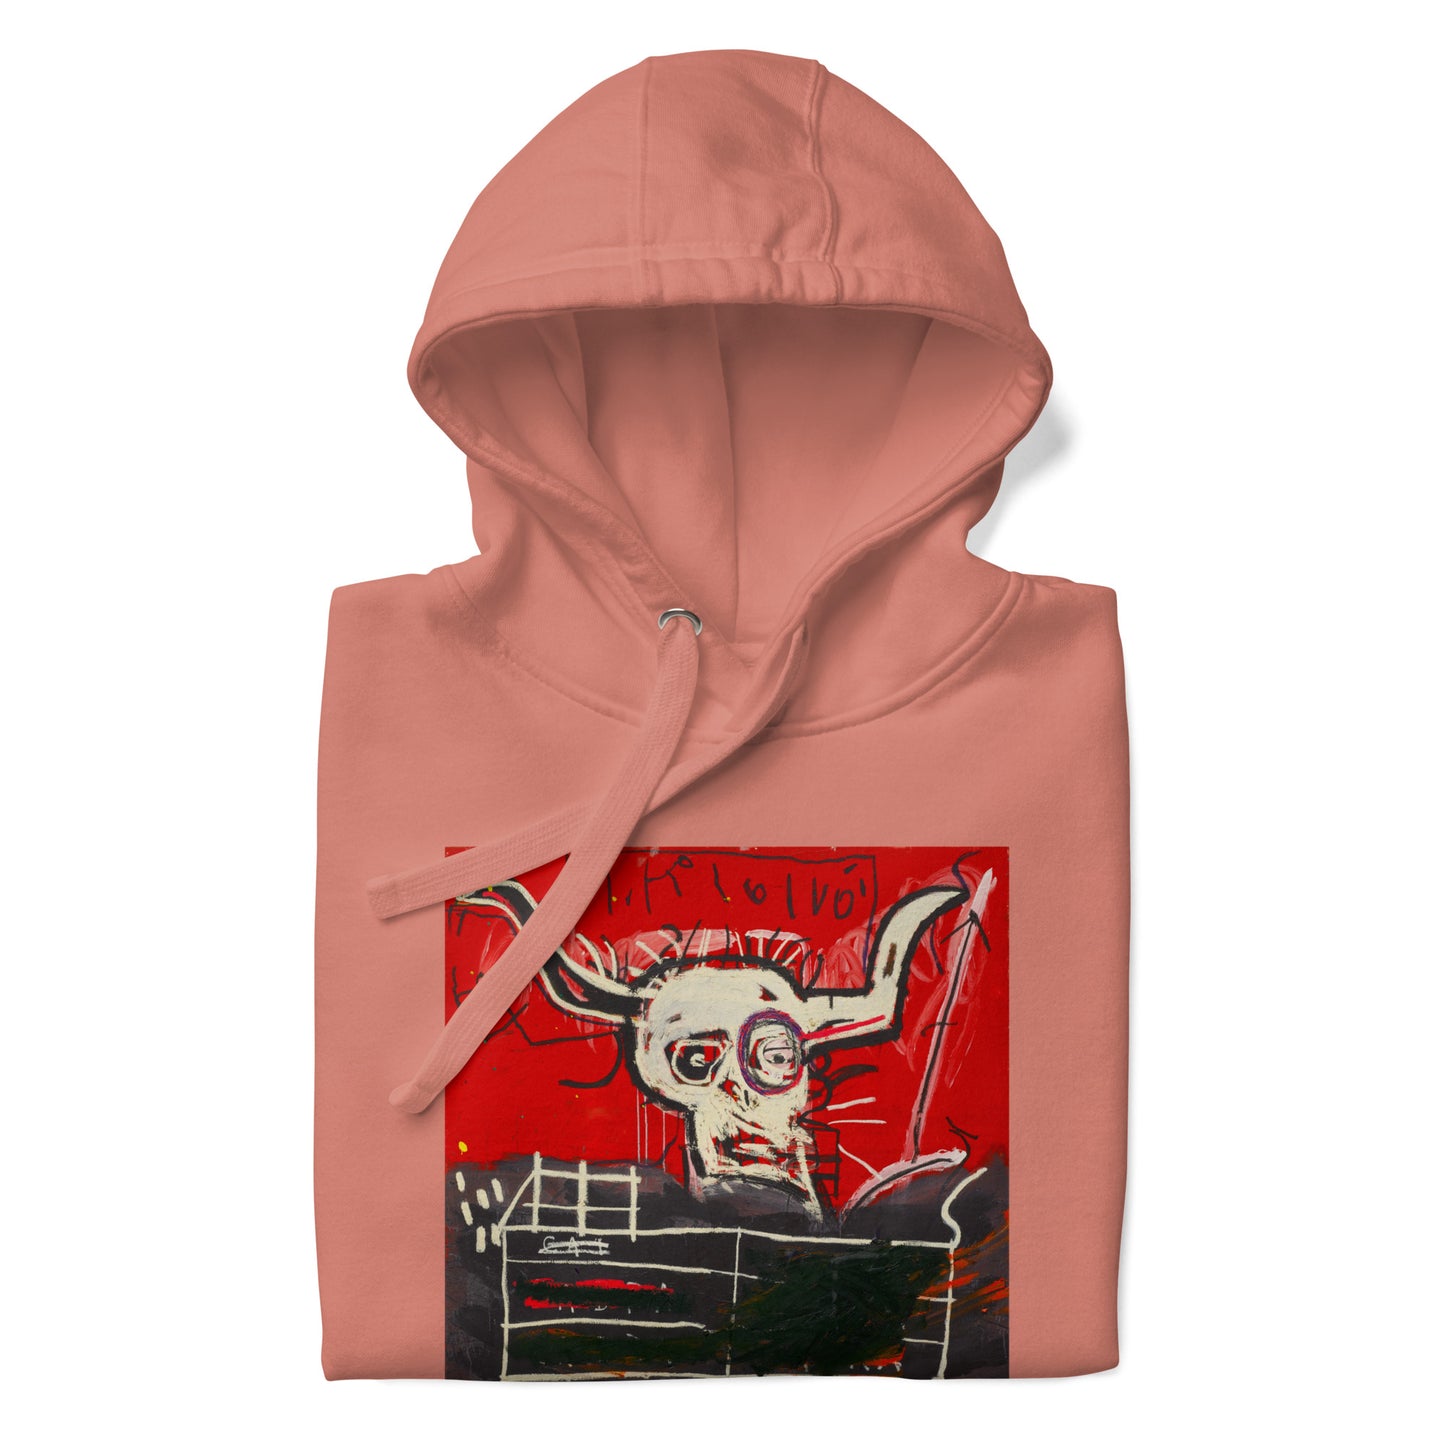 Jean-Michel Basquiat "Cabra" Artwork Printed Premium Streetwear Sweatshirt Hoodie Salmon Pink